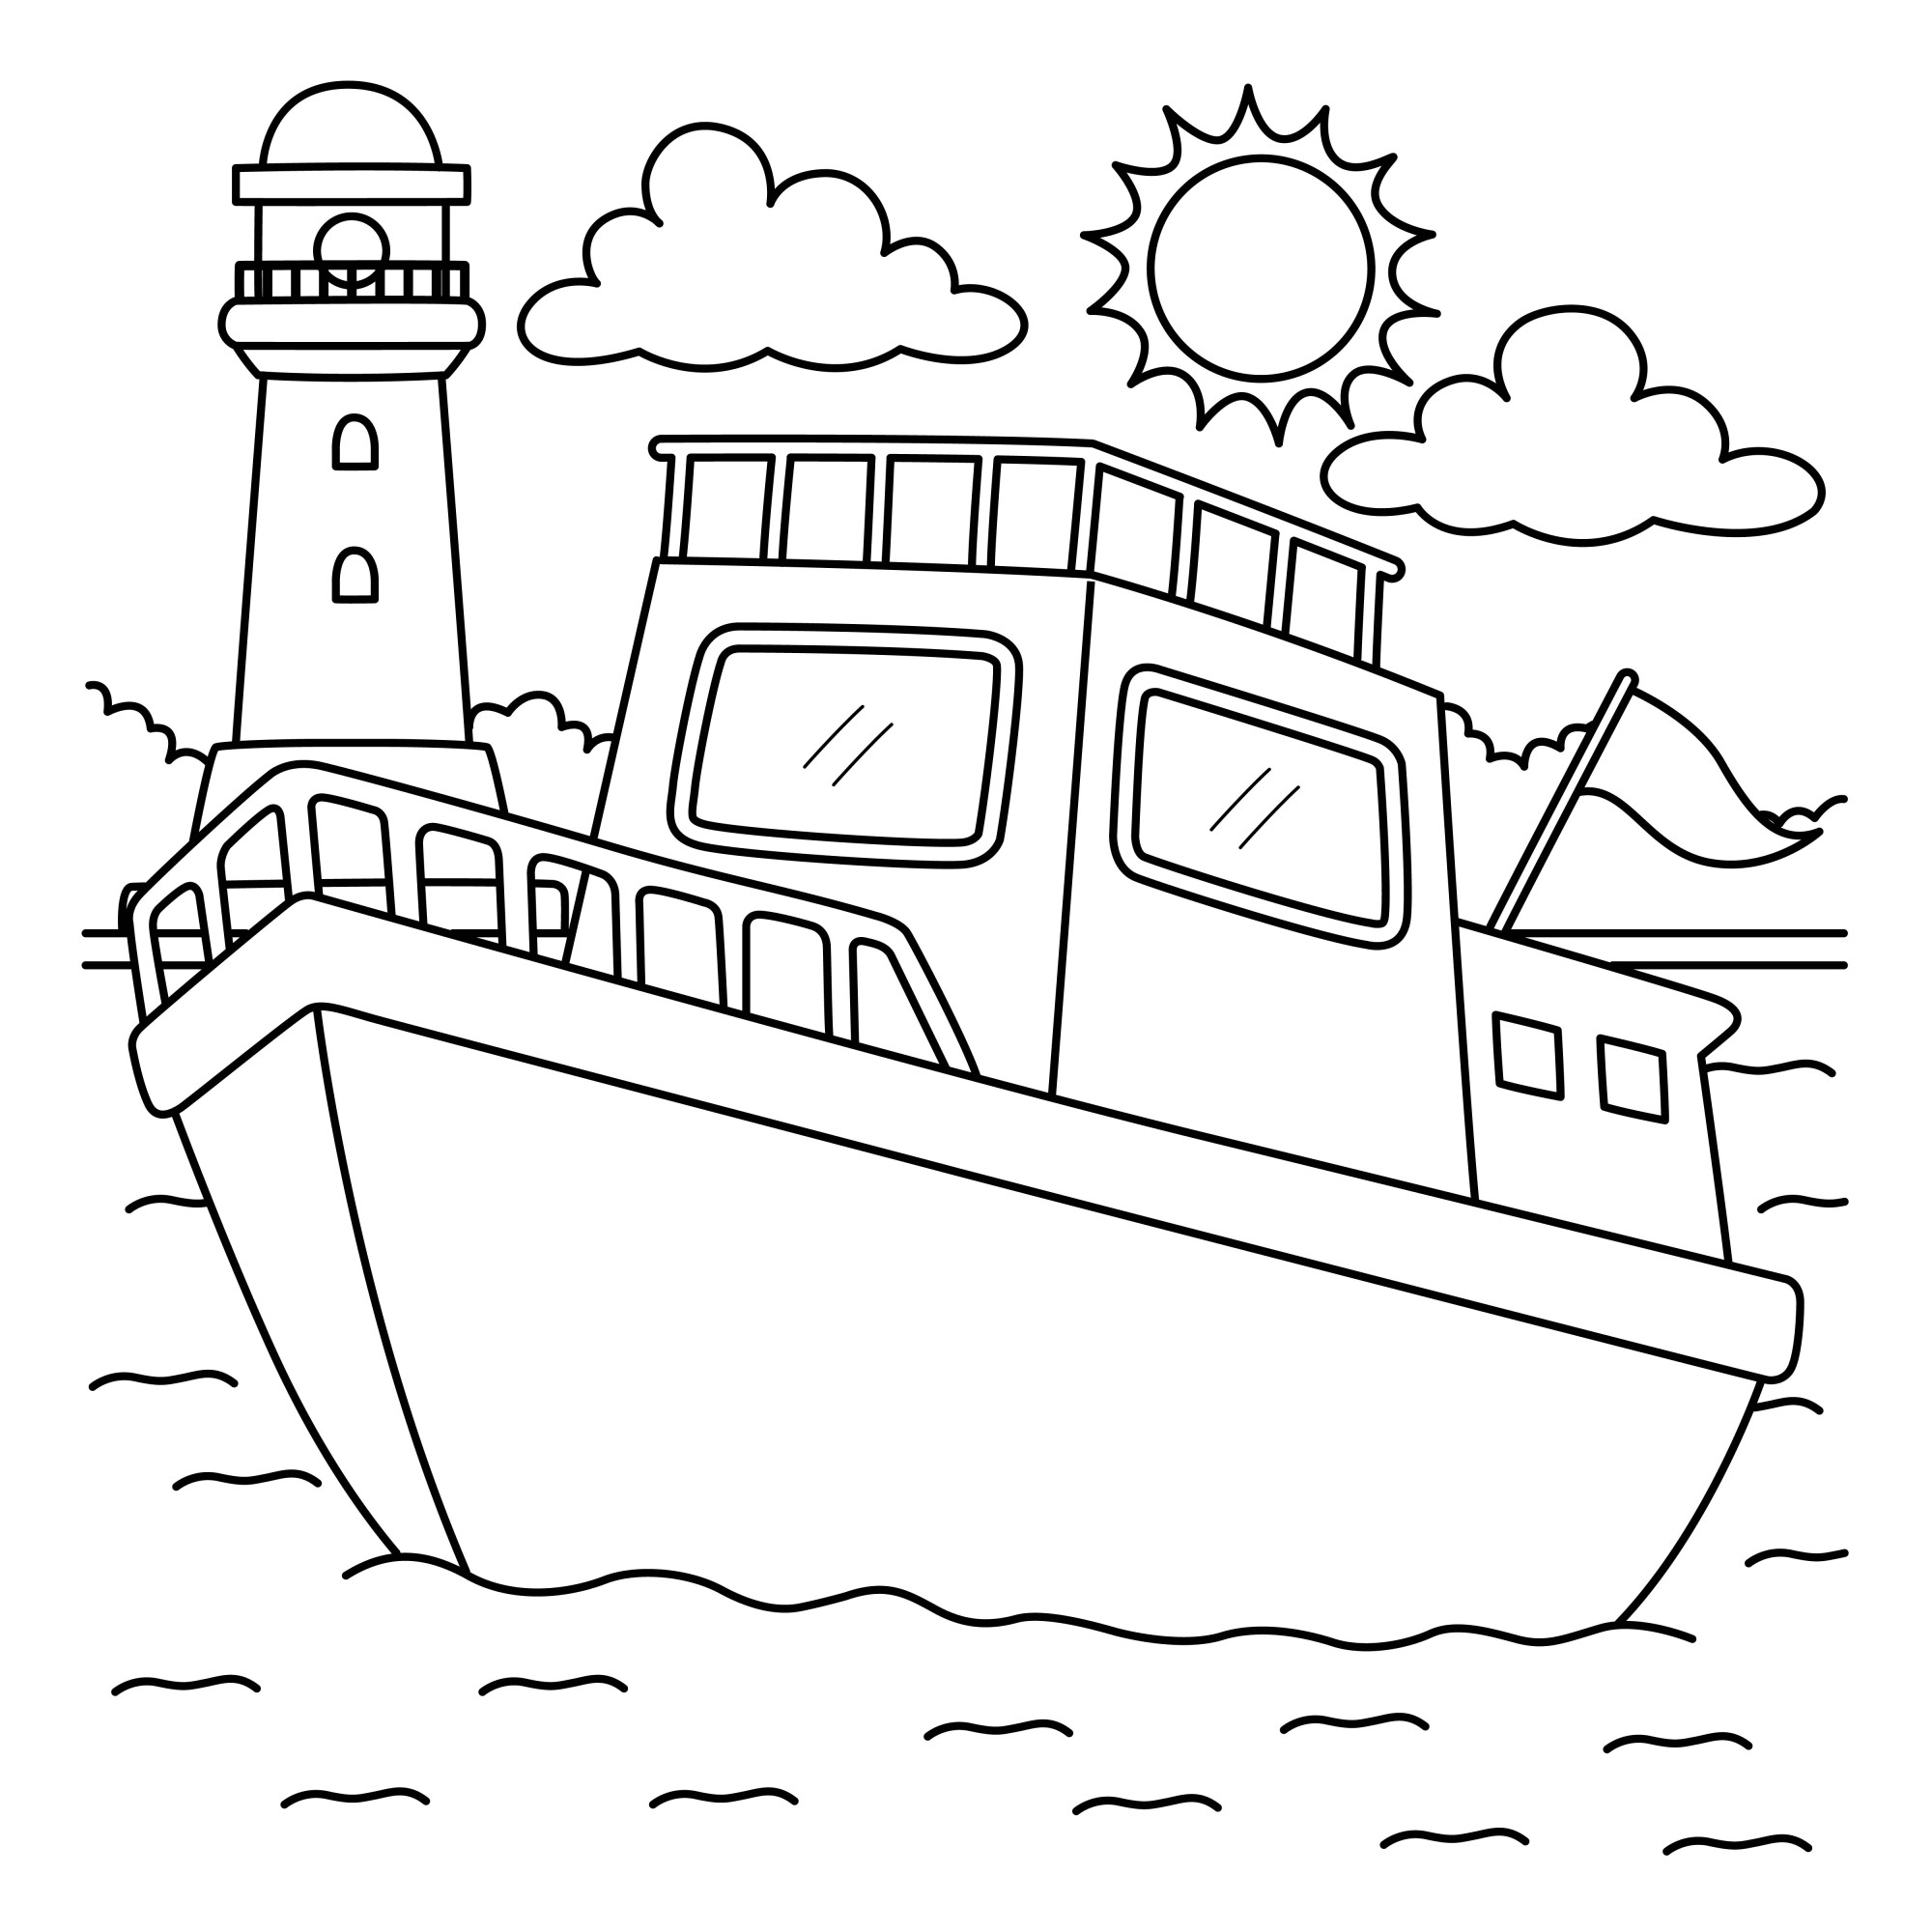 Раскраска для детей: корабль с флагом на фоне маяка «Шелковые волны»